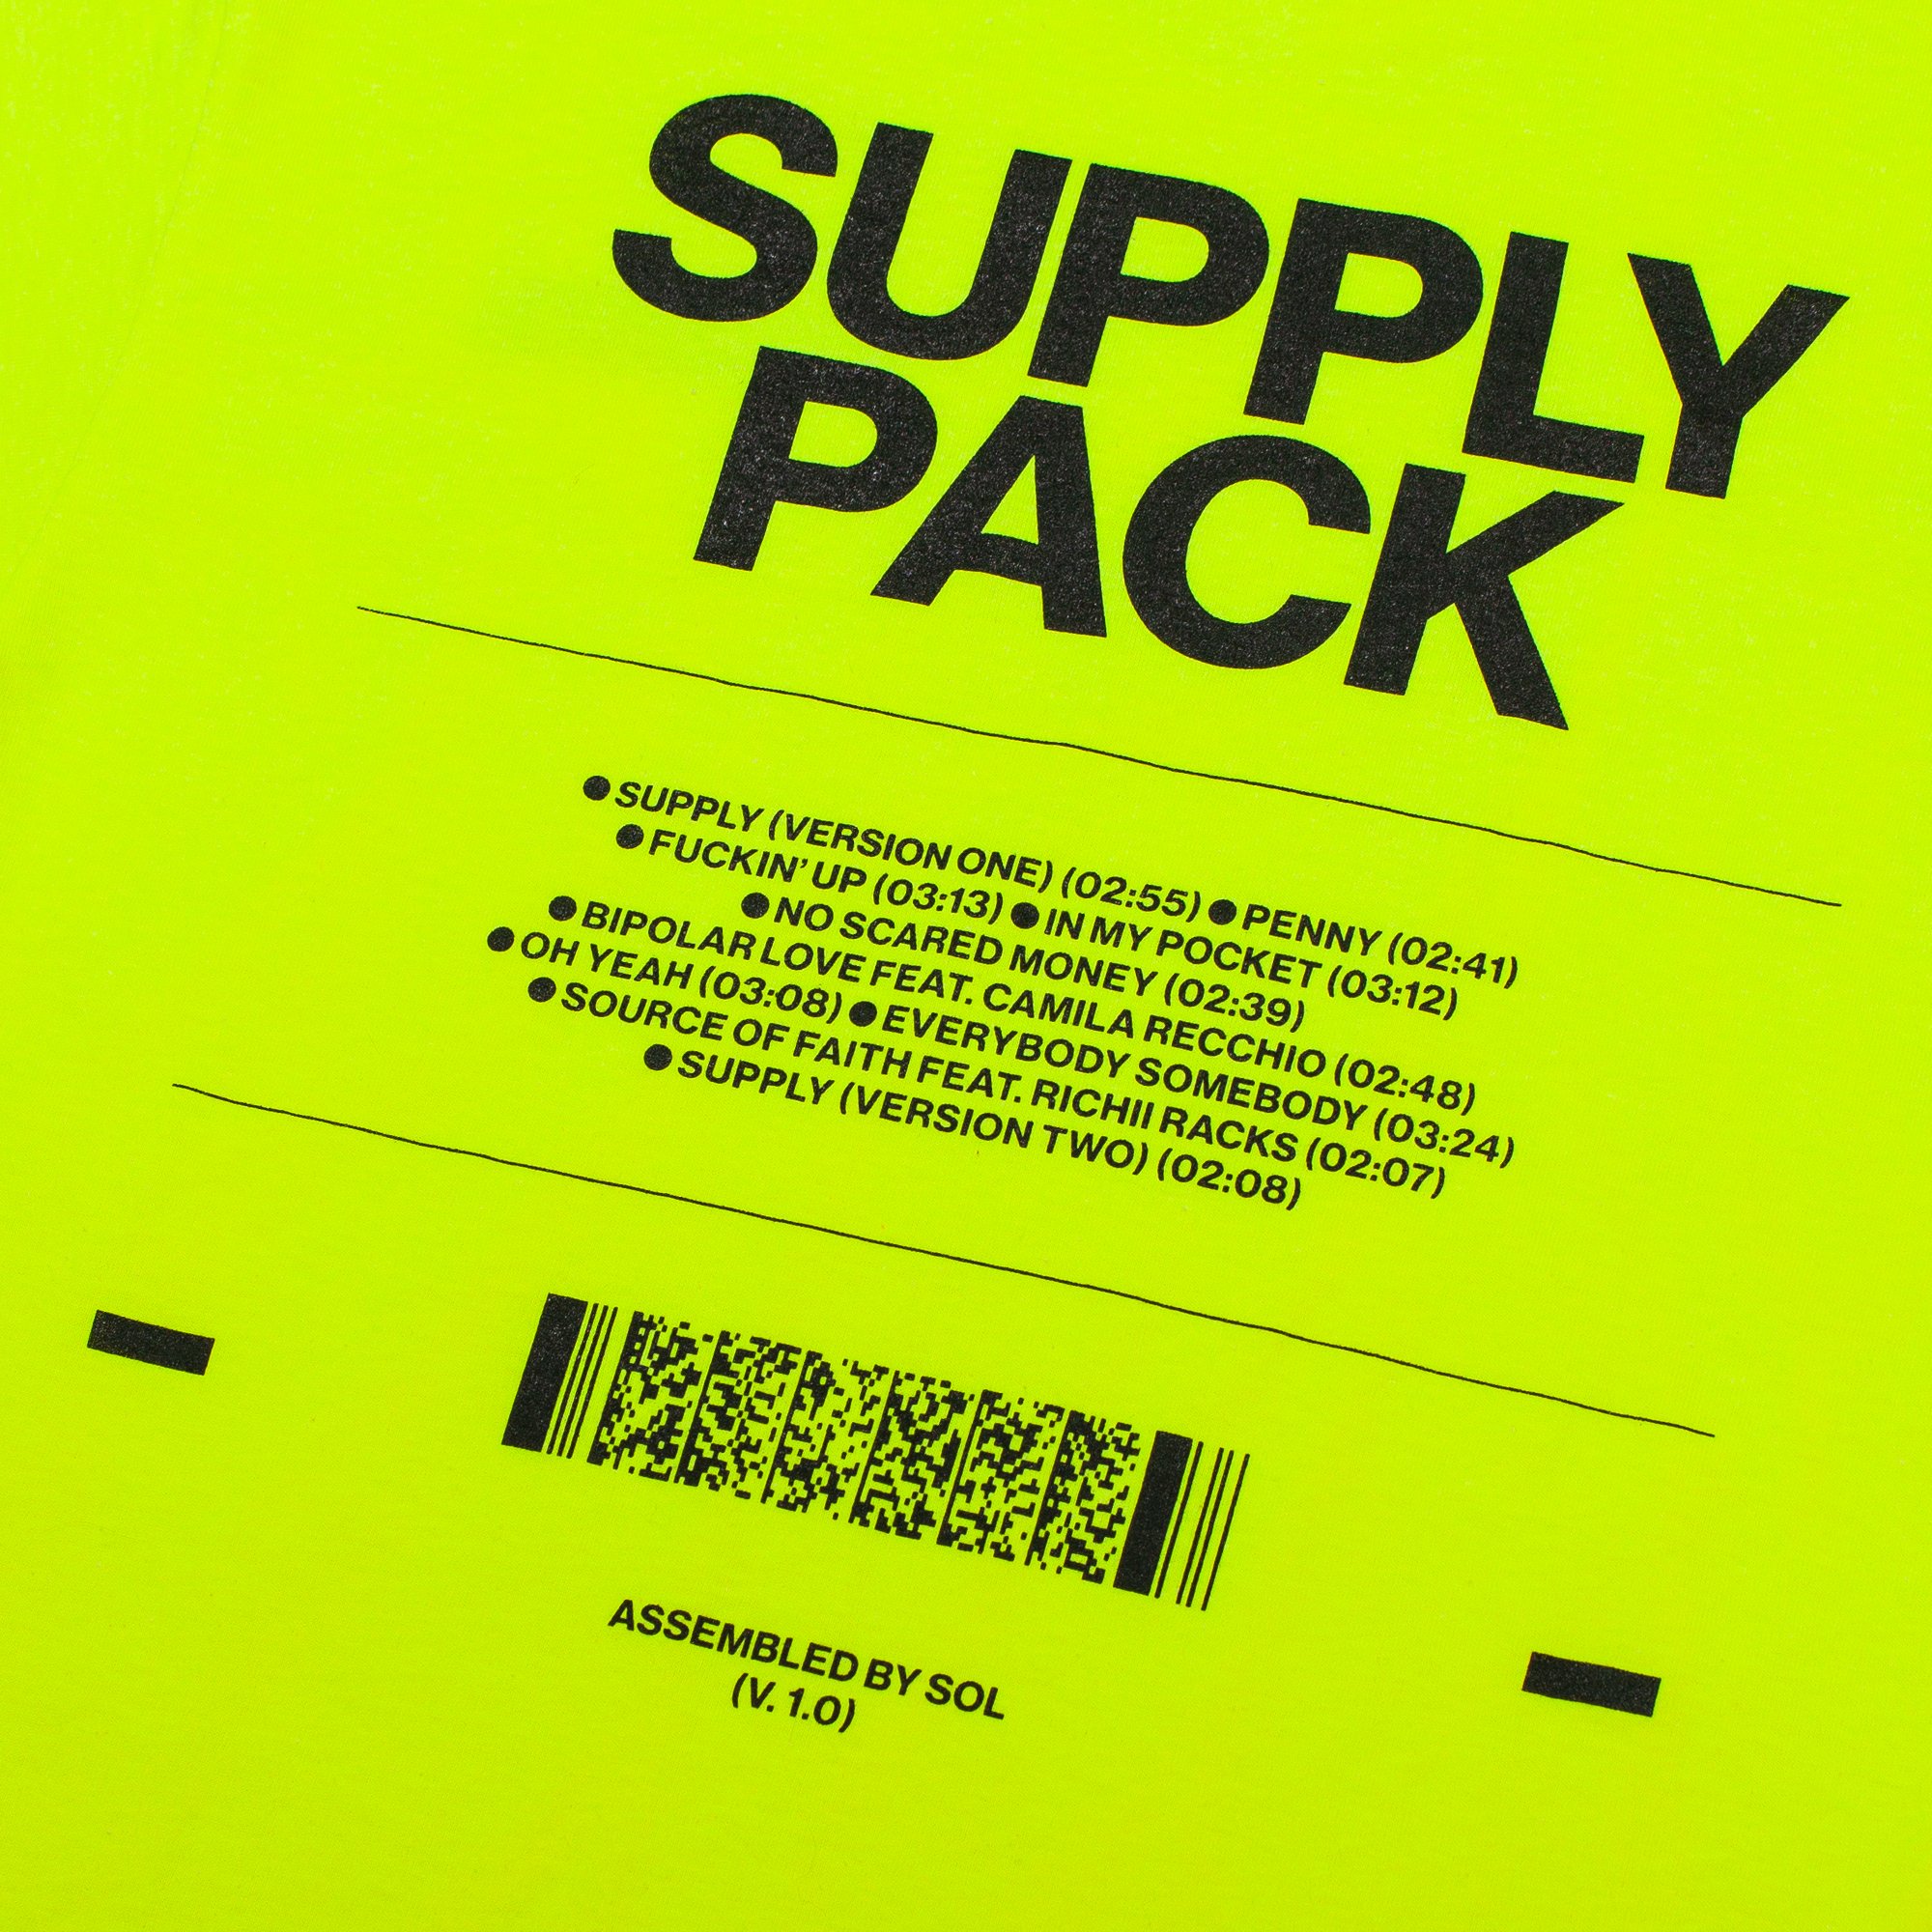 Supply Pack Tee - Yellow